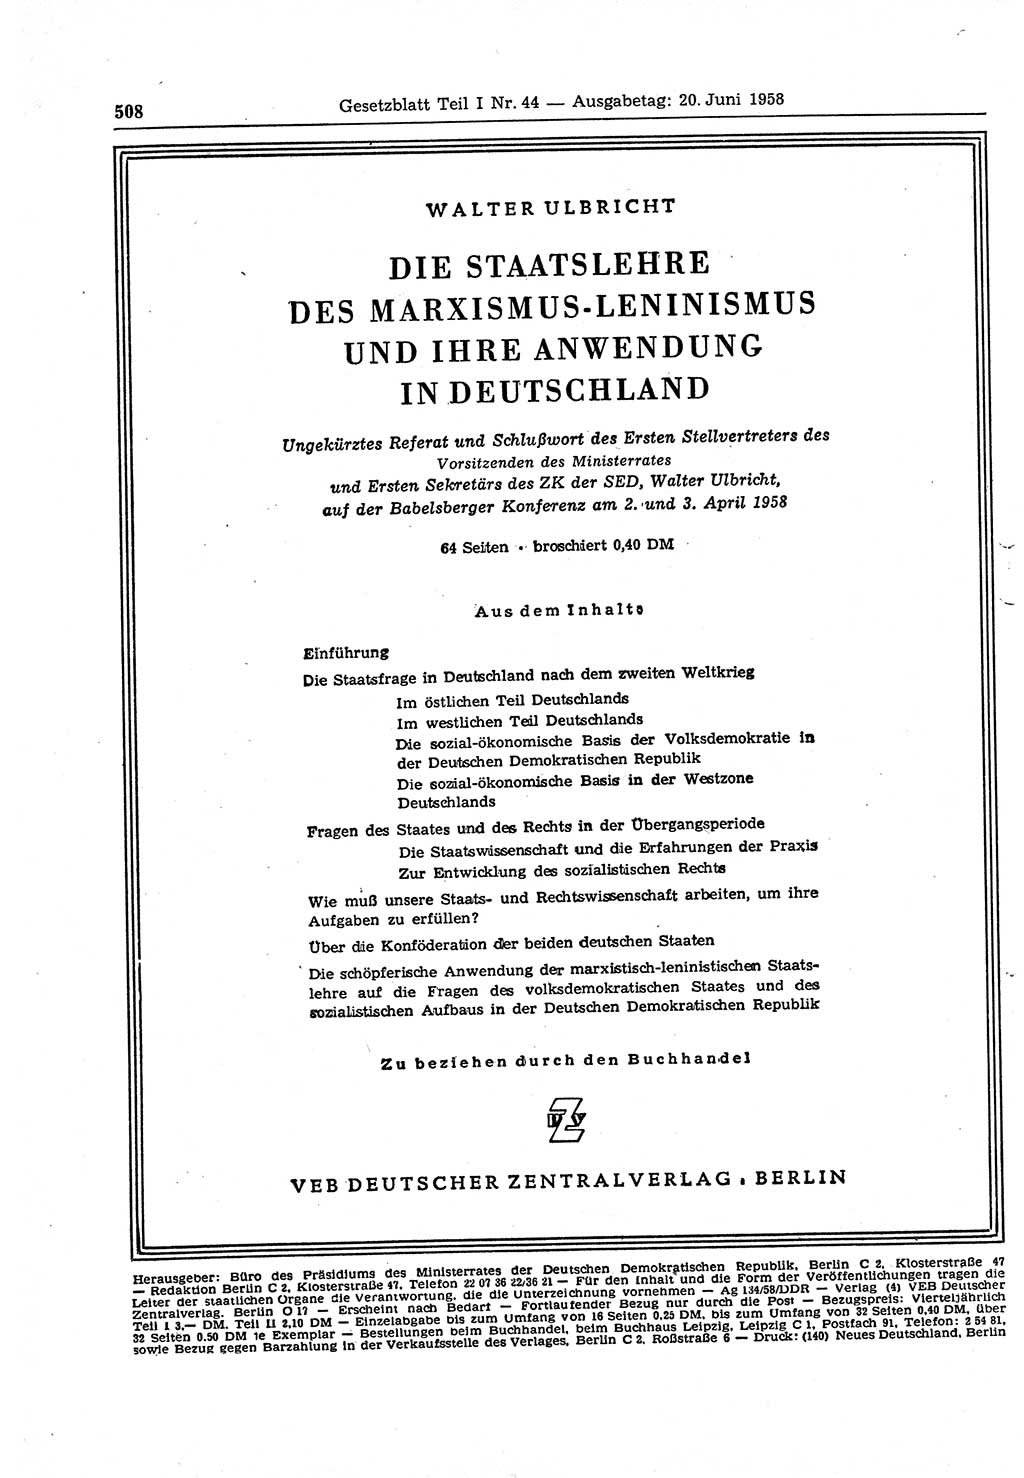 Gesetzblatt (GBl.) der Deutschen Demokratischen Republik (DDR) Teil Ⅰ 1958, Seite 508 (GBl. DDR Ⅰ 1958, S. 508)